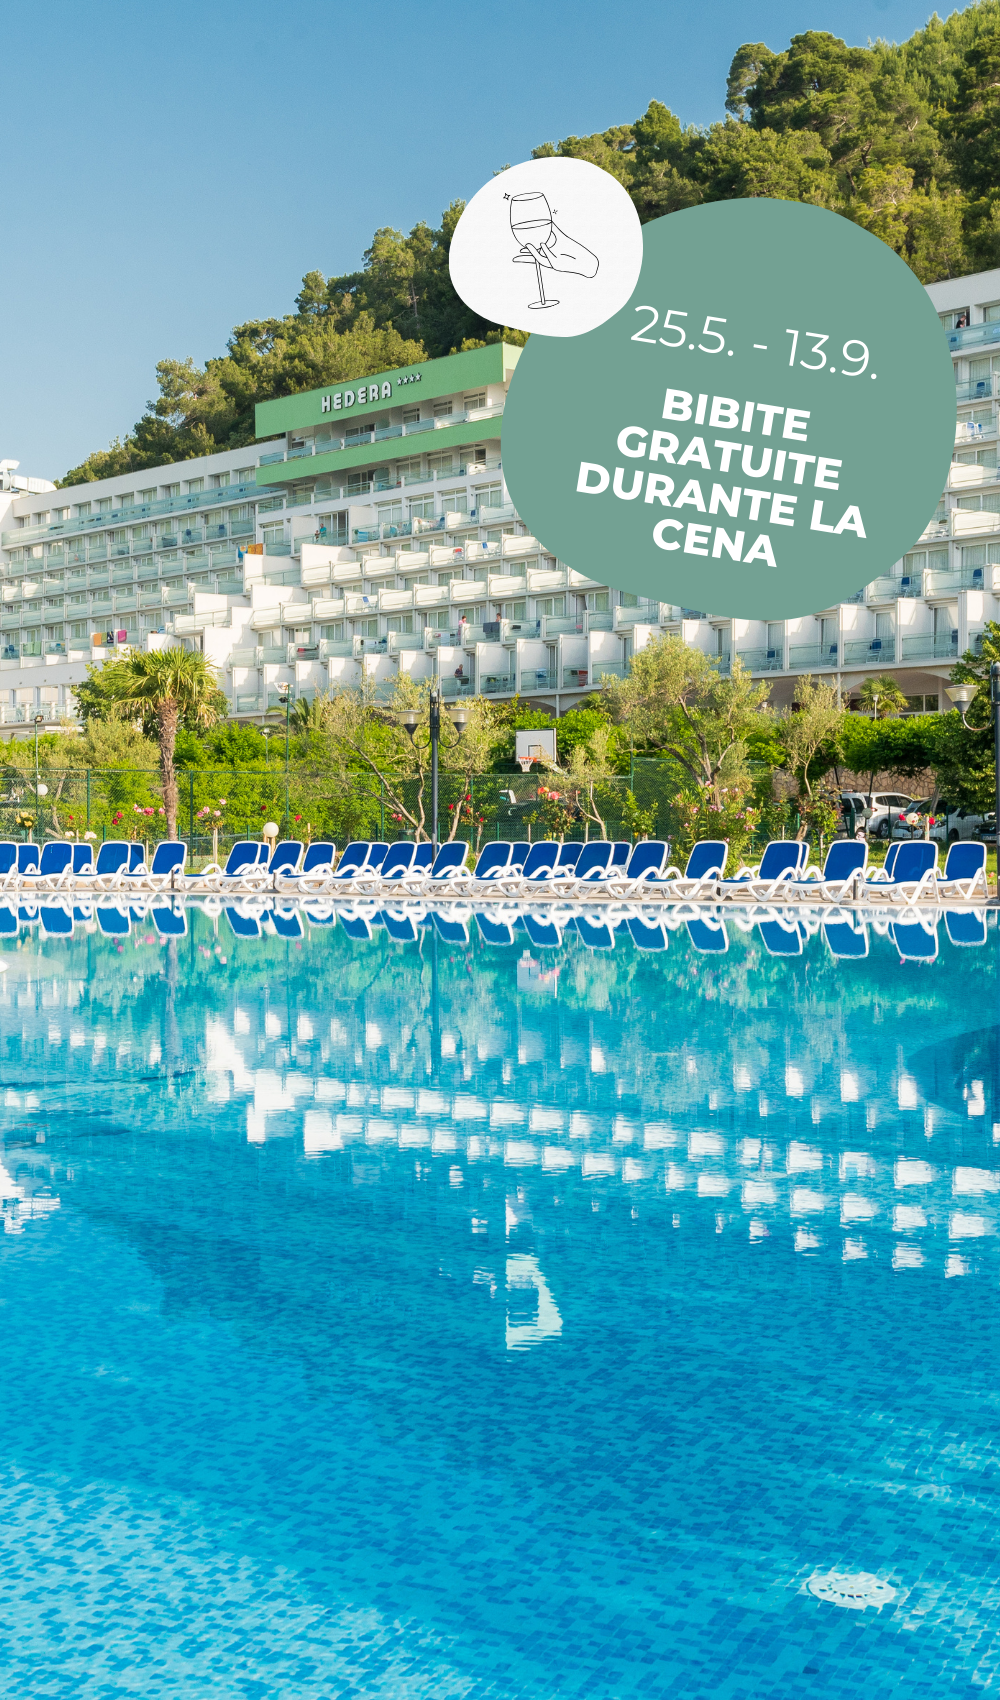 L'Hotel Hedera è il posto giusto per una vacanza con famiglia in Croazia. Questo hotel offre intrattenimento e attività per tutta la famiglia.